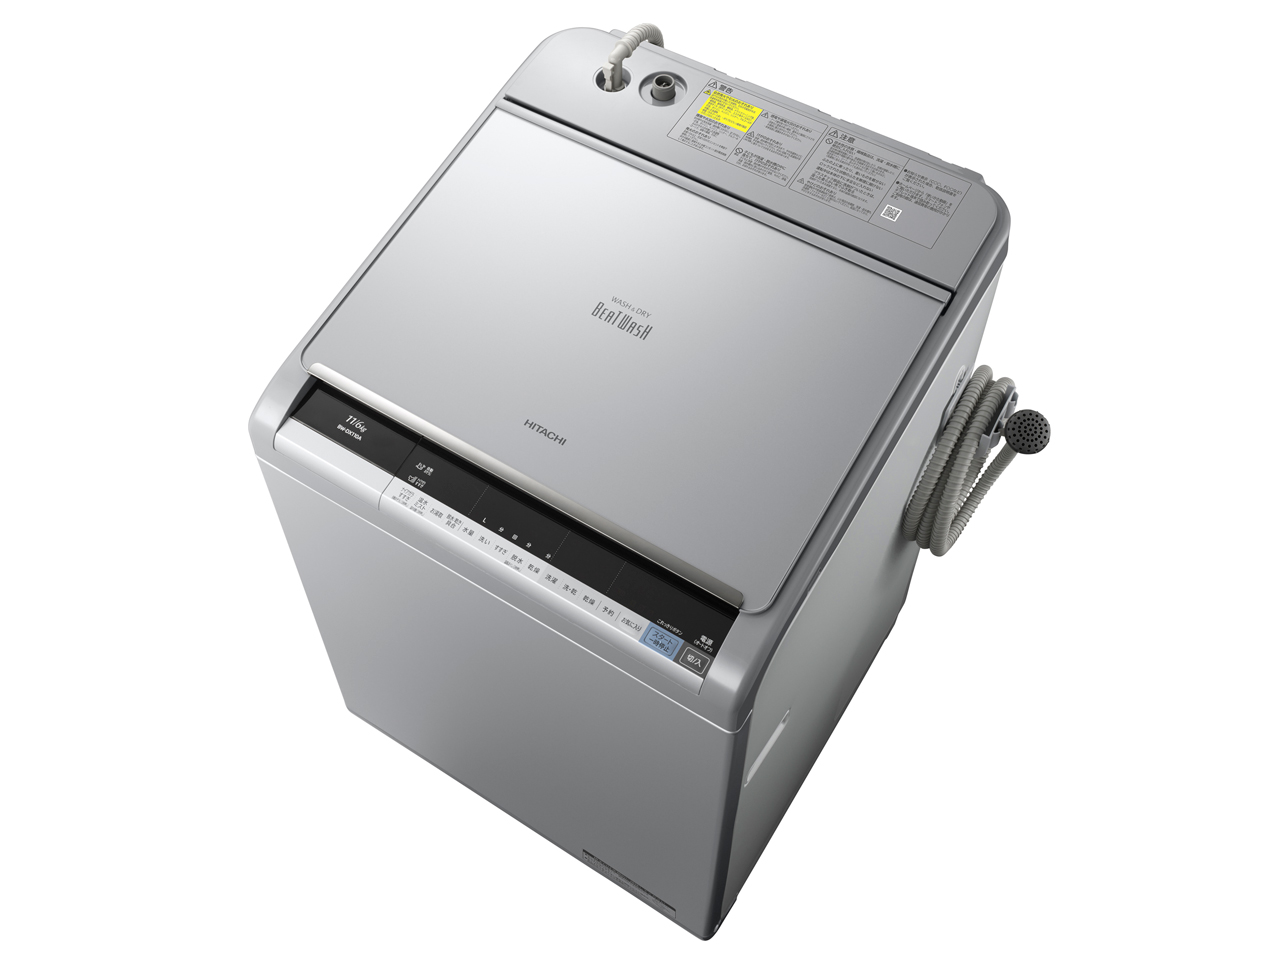 日立 BW-DX110A-S 全自動洗濯乾燥機(洗濯11.0kg/乾燥6.0kg)「ビートウォッシュ」 シルバー